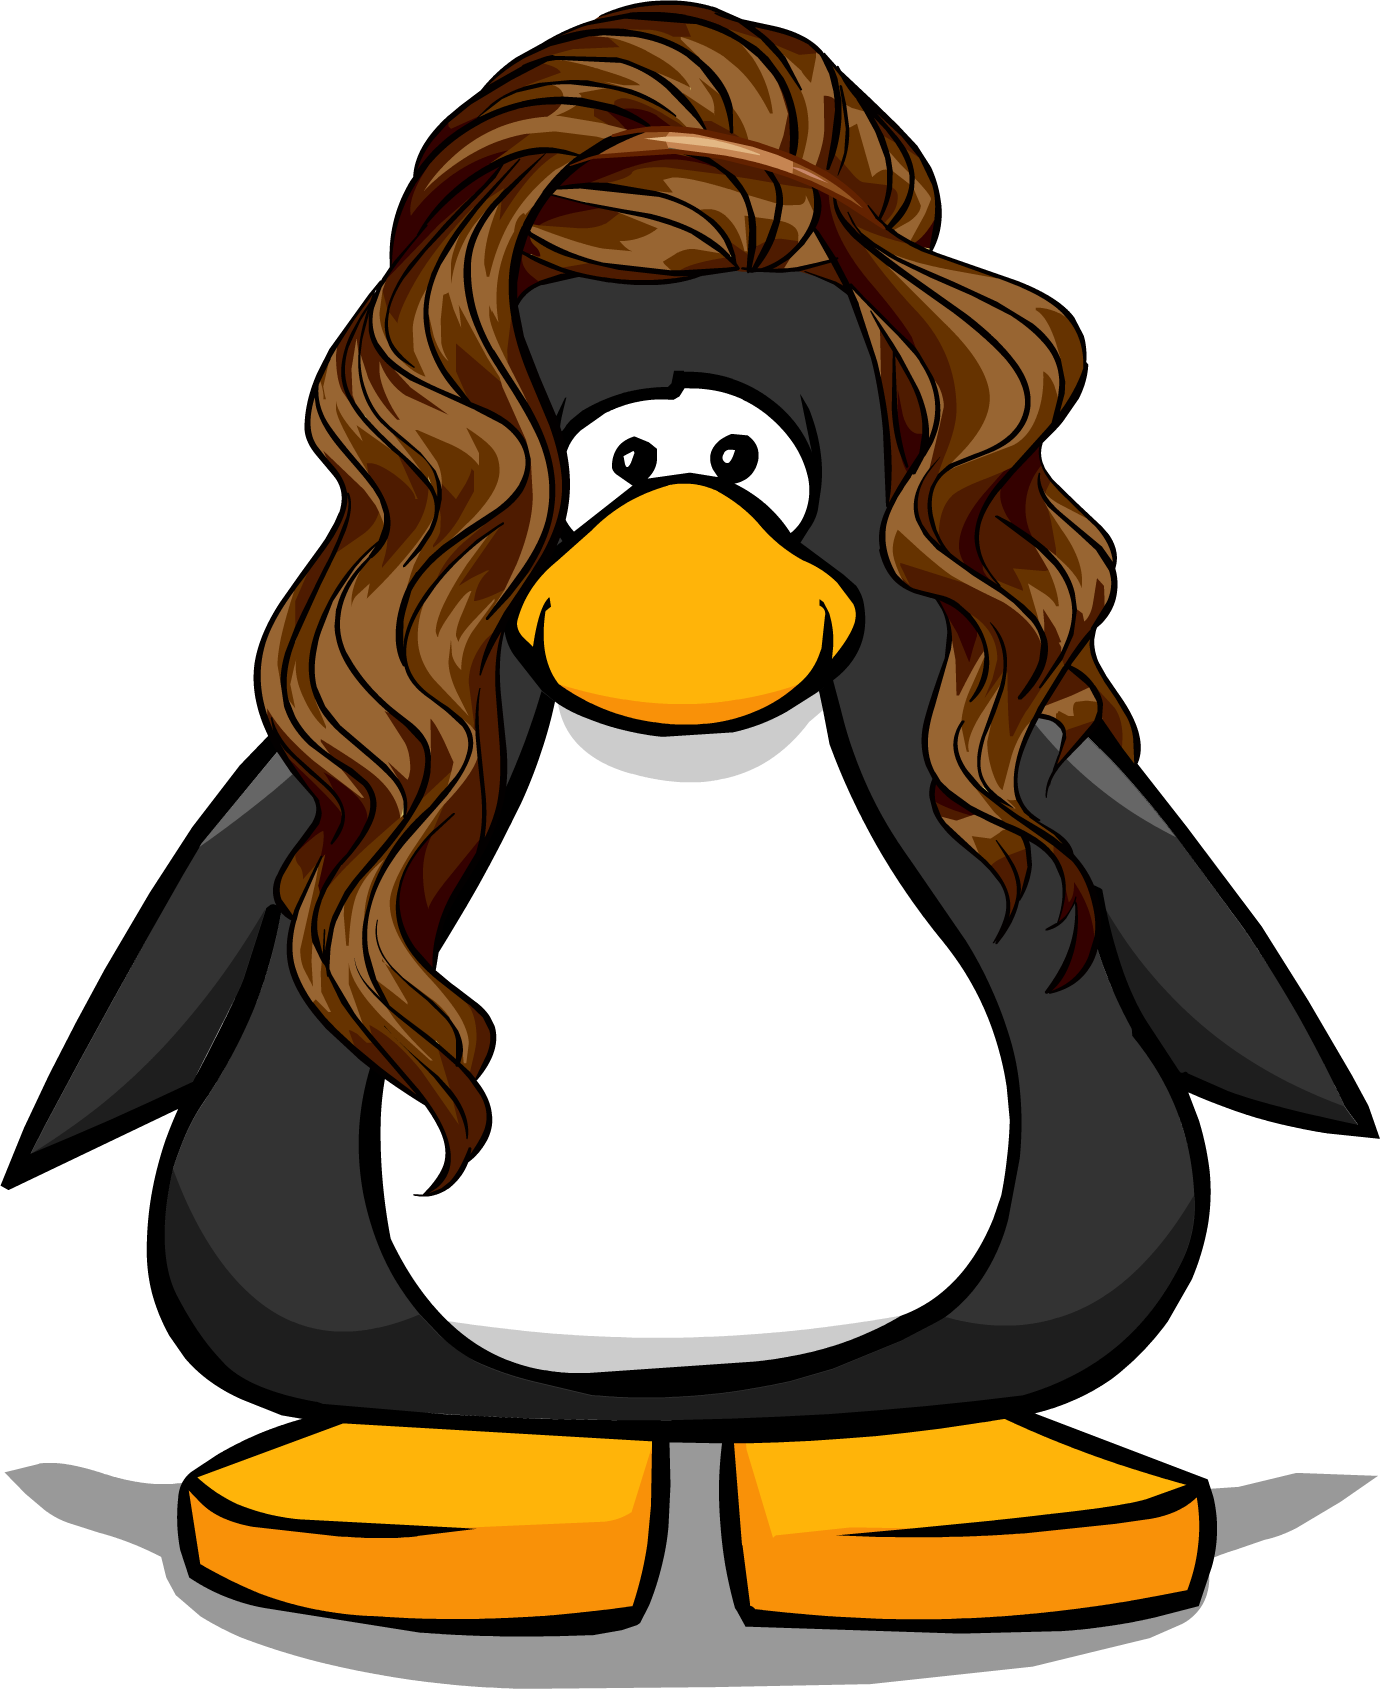 19, August 23, 2014 - Brown Hair In Club Penguin (1380x1689)